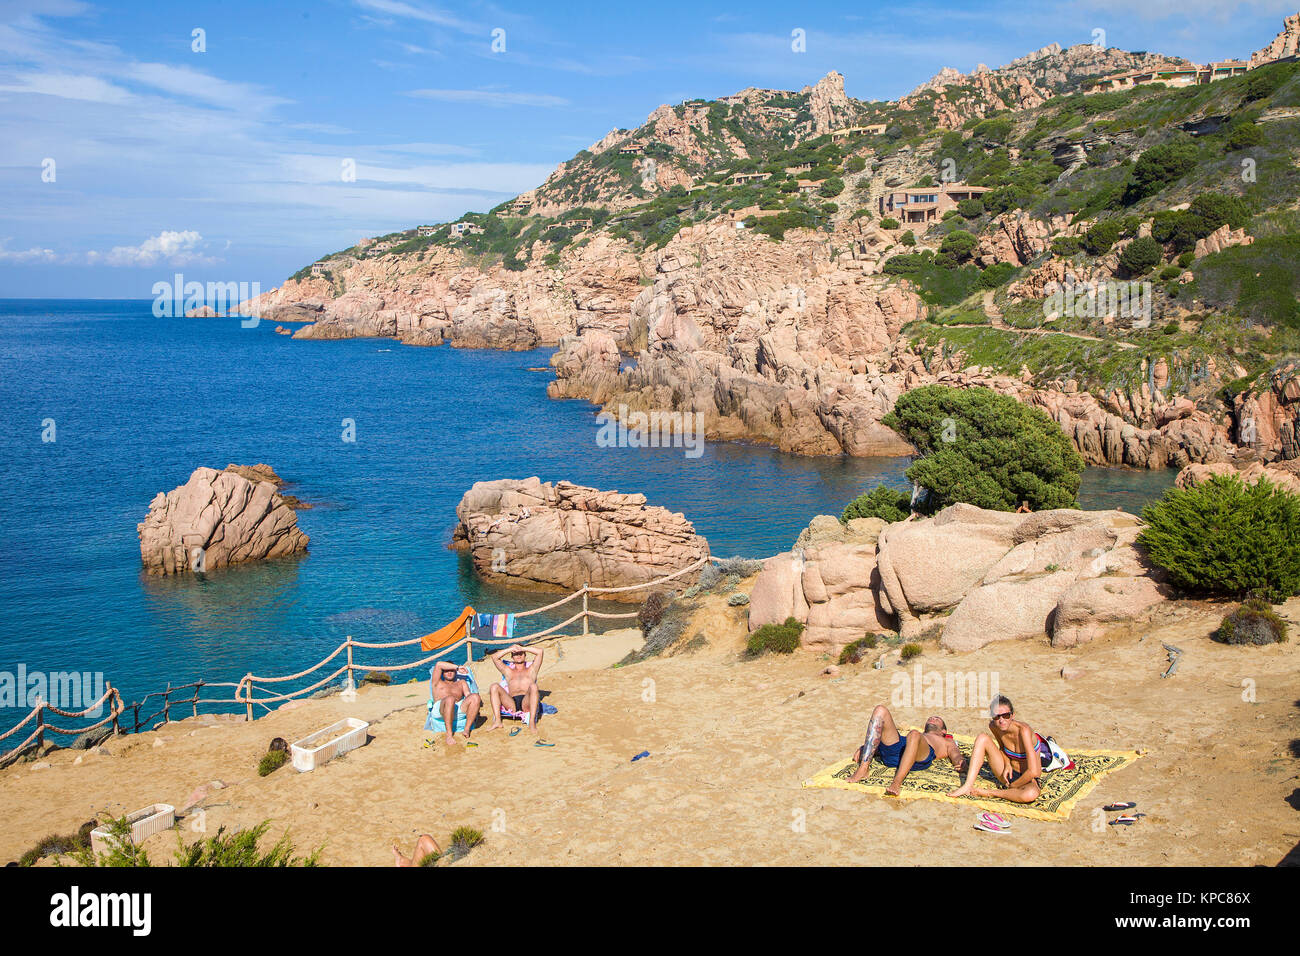 Bathing place at the rocky coast of Costa Paradiso, porphyry rocks, Sardinia, Italy, Mediterranean  sea, Europe Stock Photo